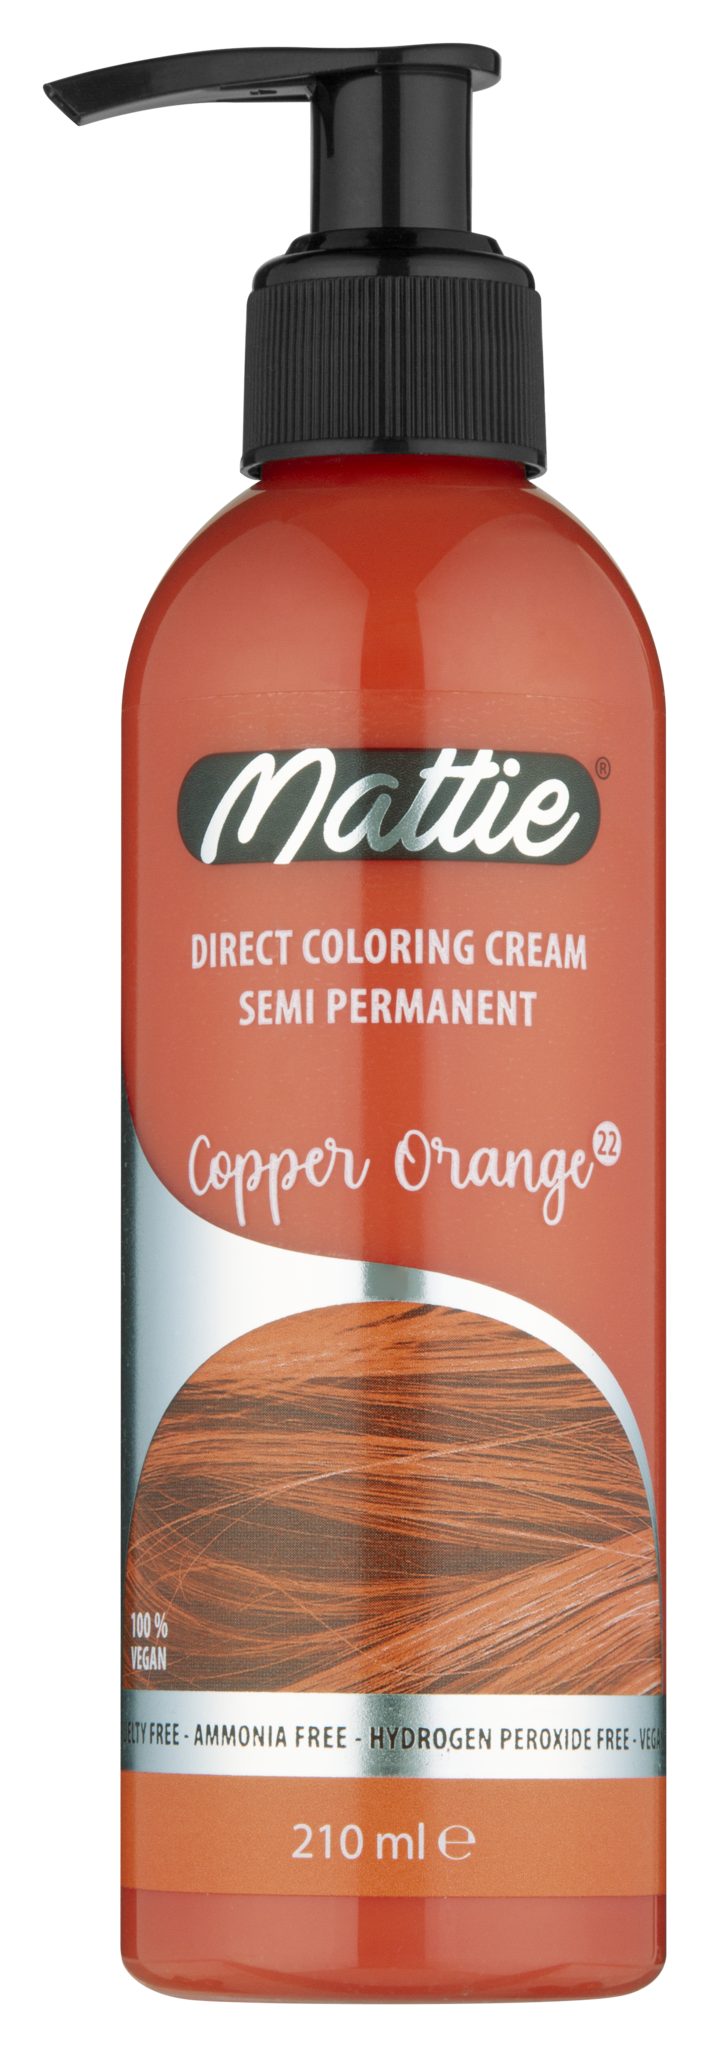 Mattie Direct Coloring Cream Semi-Permanent - Copper Orange 210ml